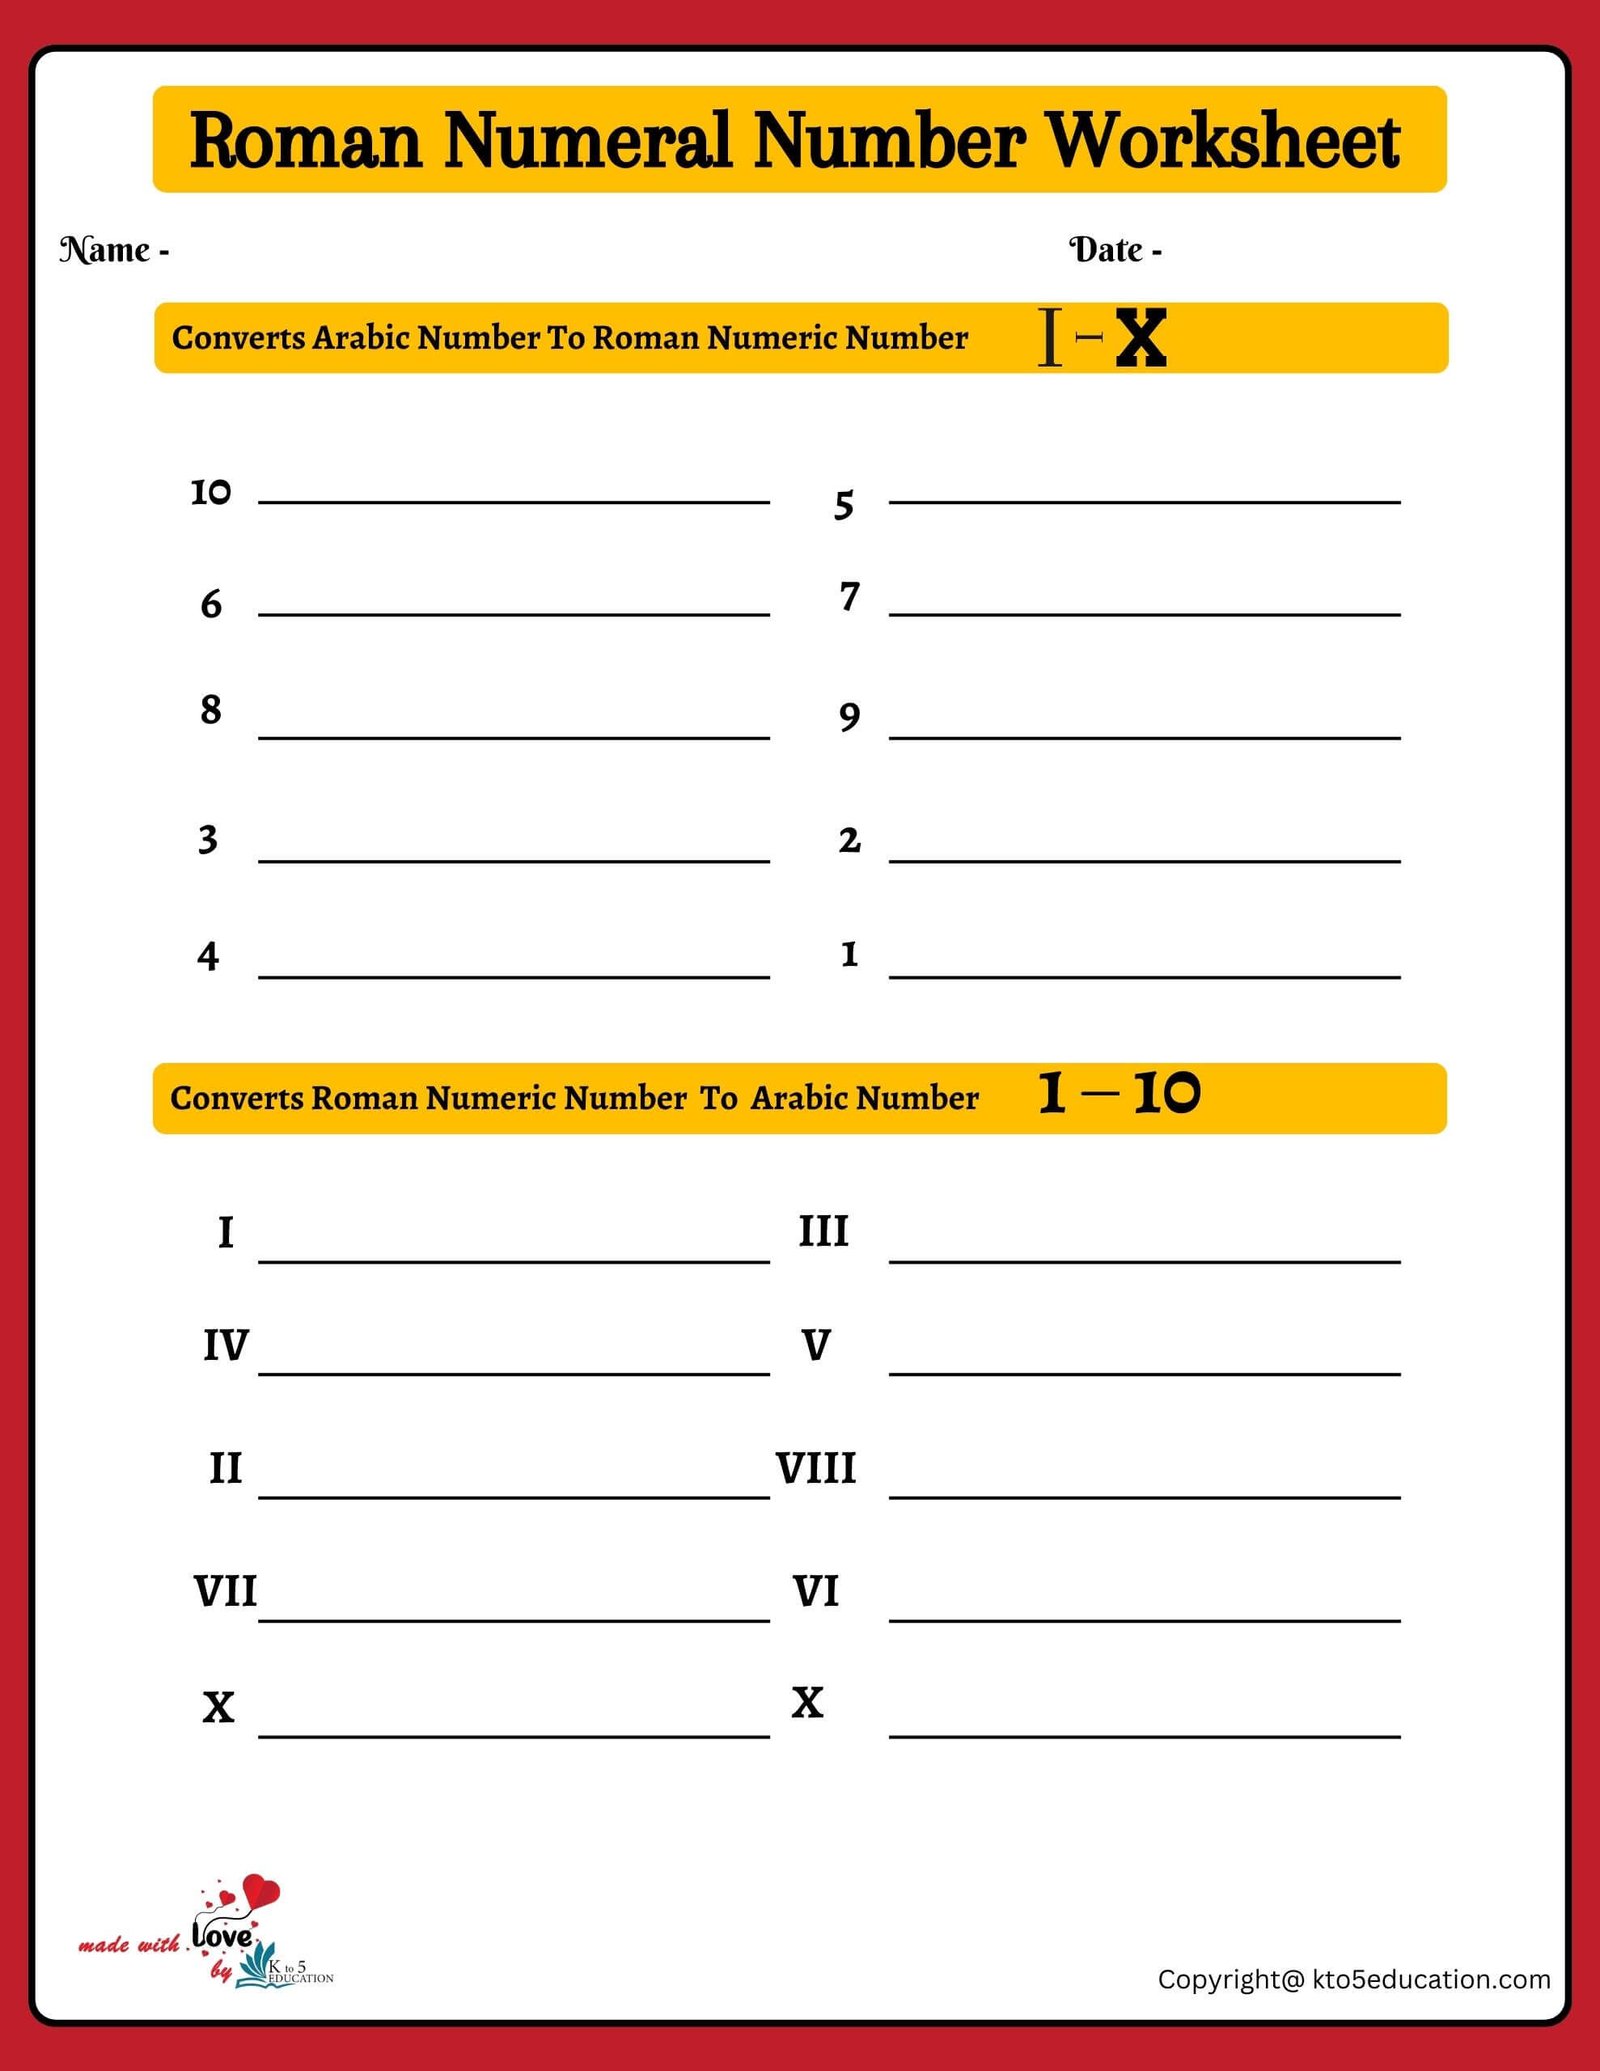 Roman Numeral Practice Worksheet